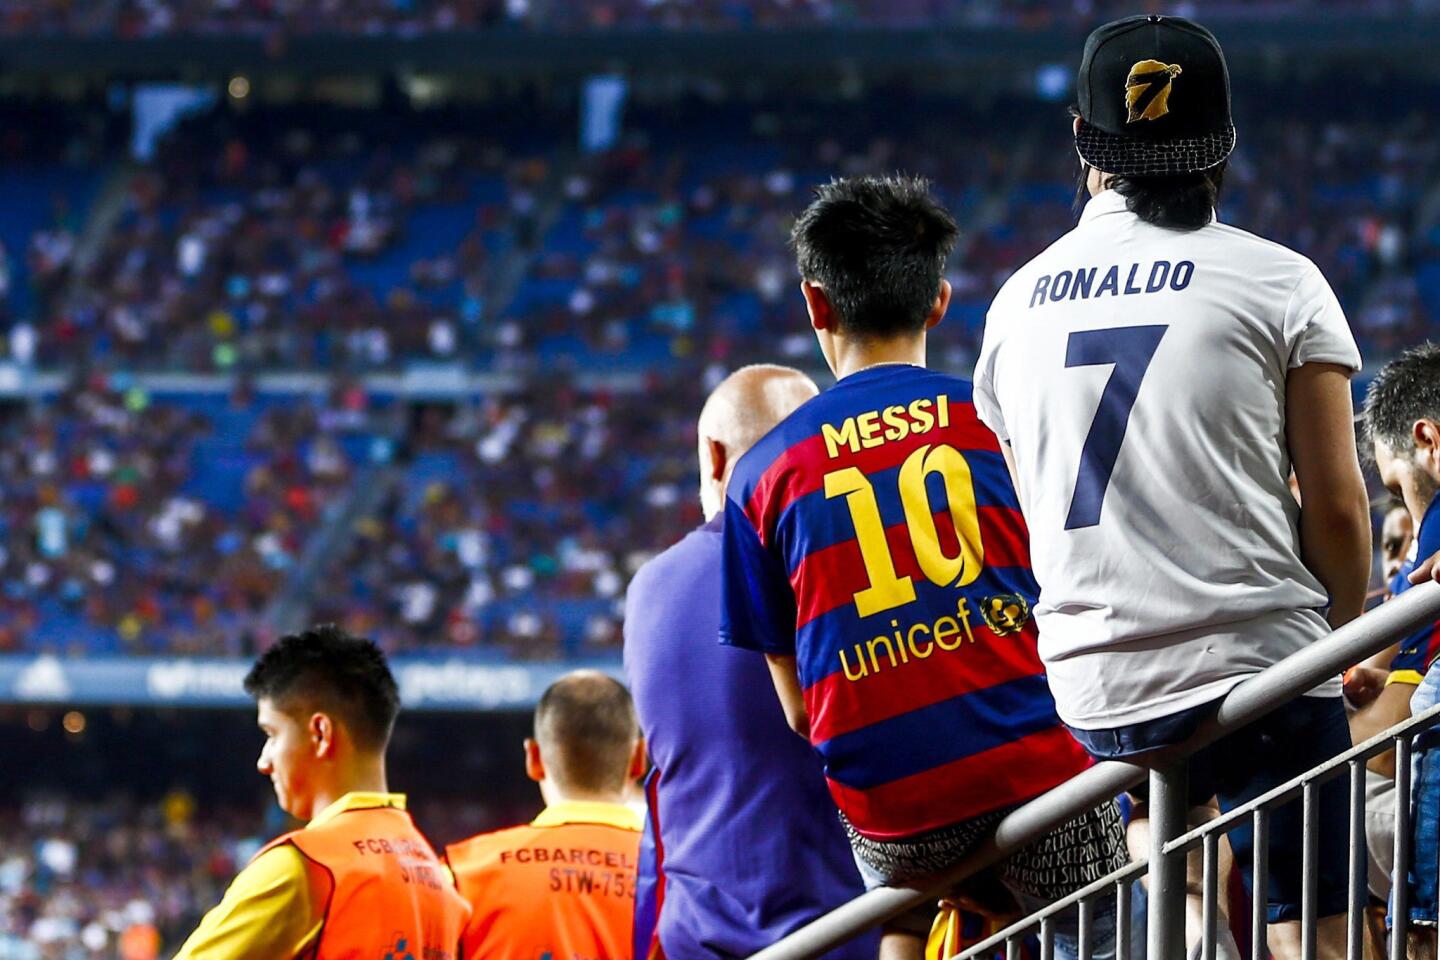 Unos aficionados con camisetas de Messi y Ronaldo esperan a que comience el partido de ida de la Supercopa de España en el Camp Nou. EFE